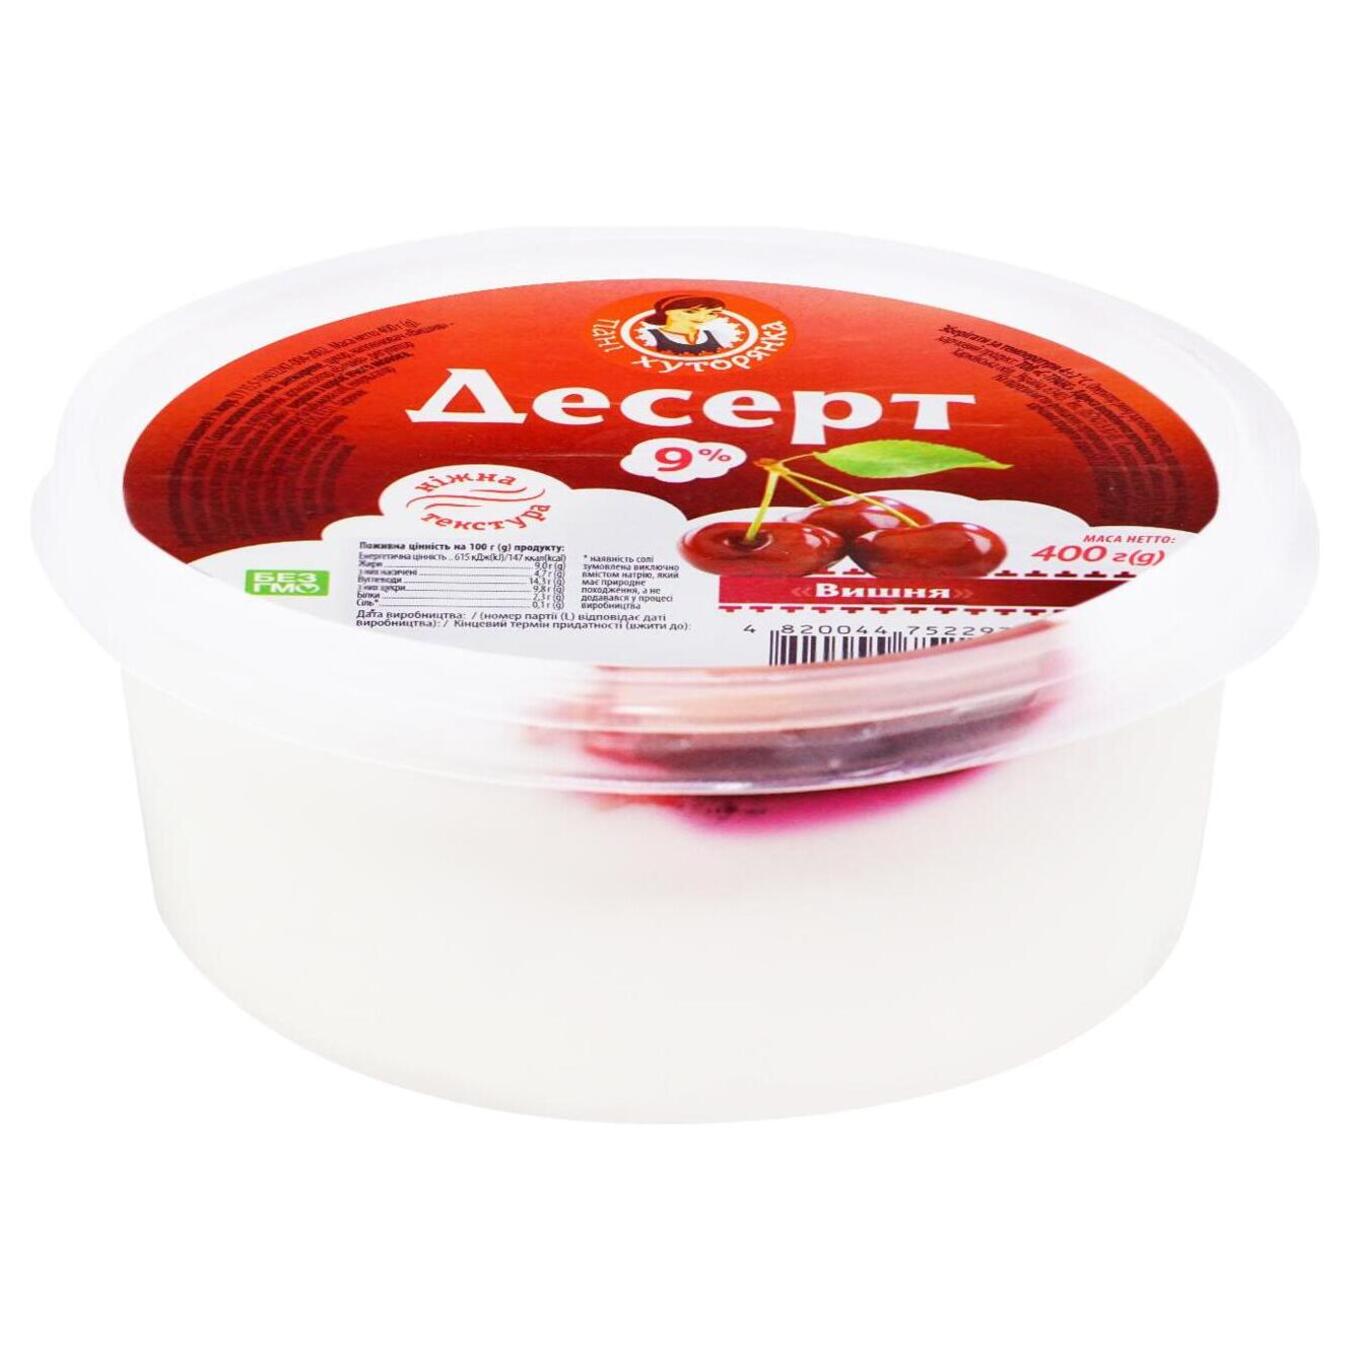 Dessert Pani Khutoryanka cherry bucket packaged 9% 400g